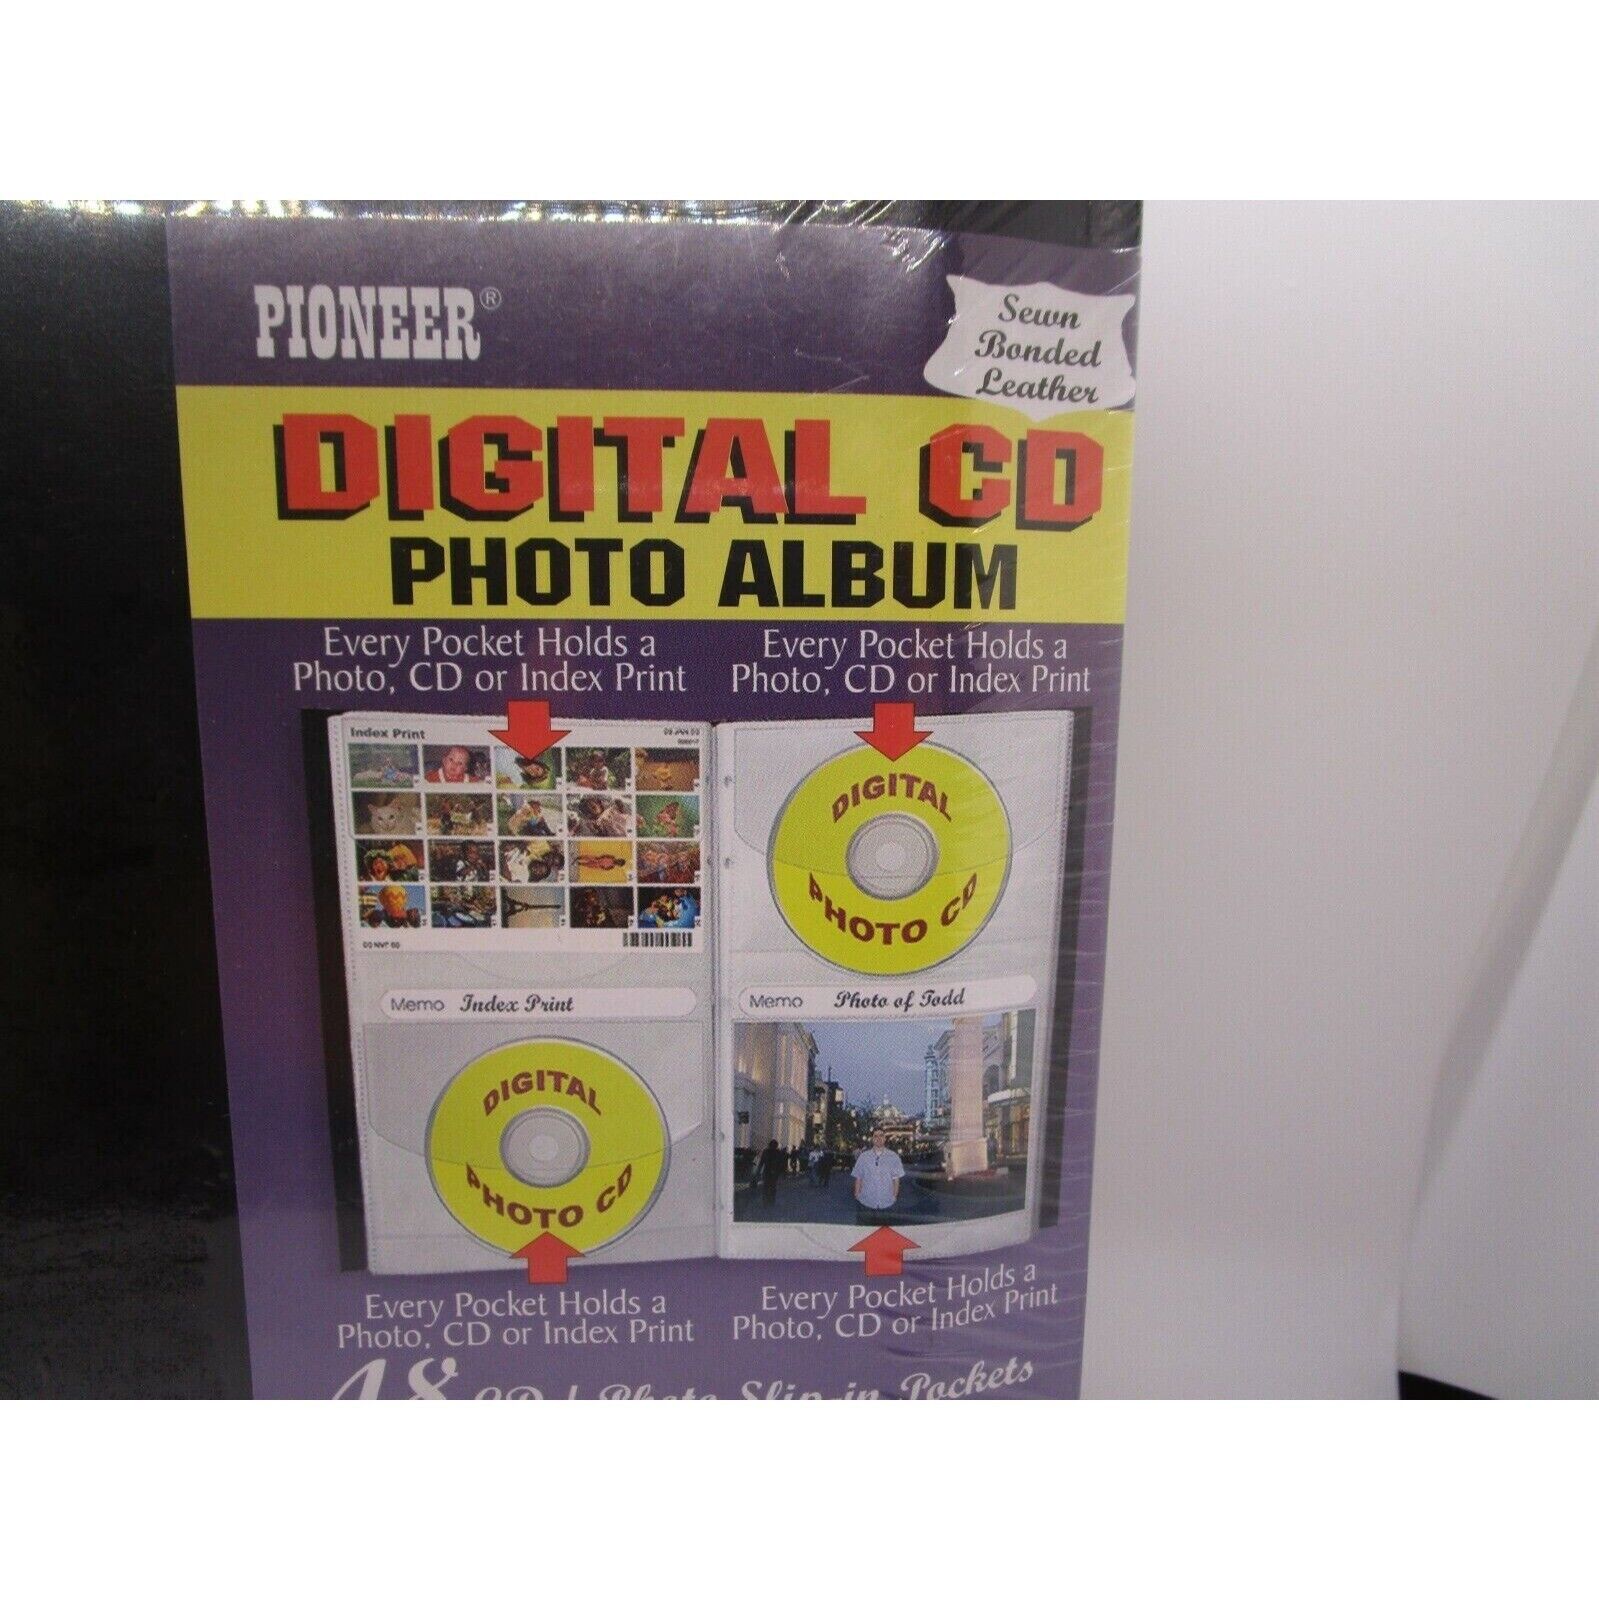 Pioneer CD48 Digital CD Photo Album holds 48 CDs